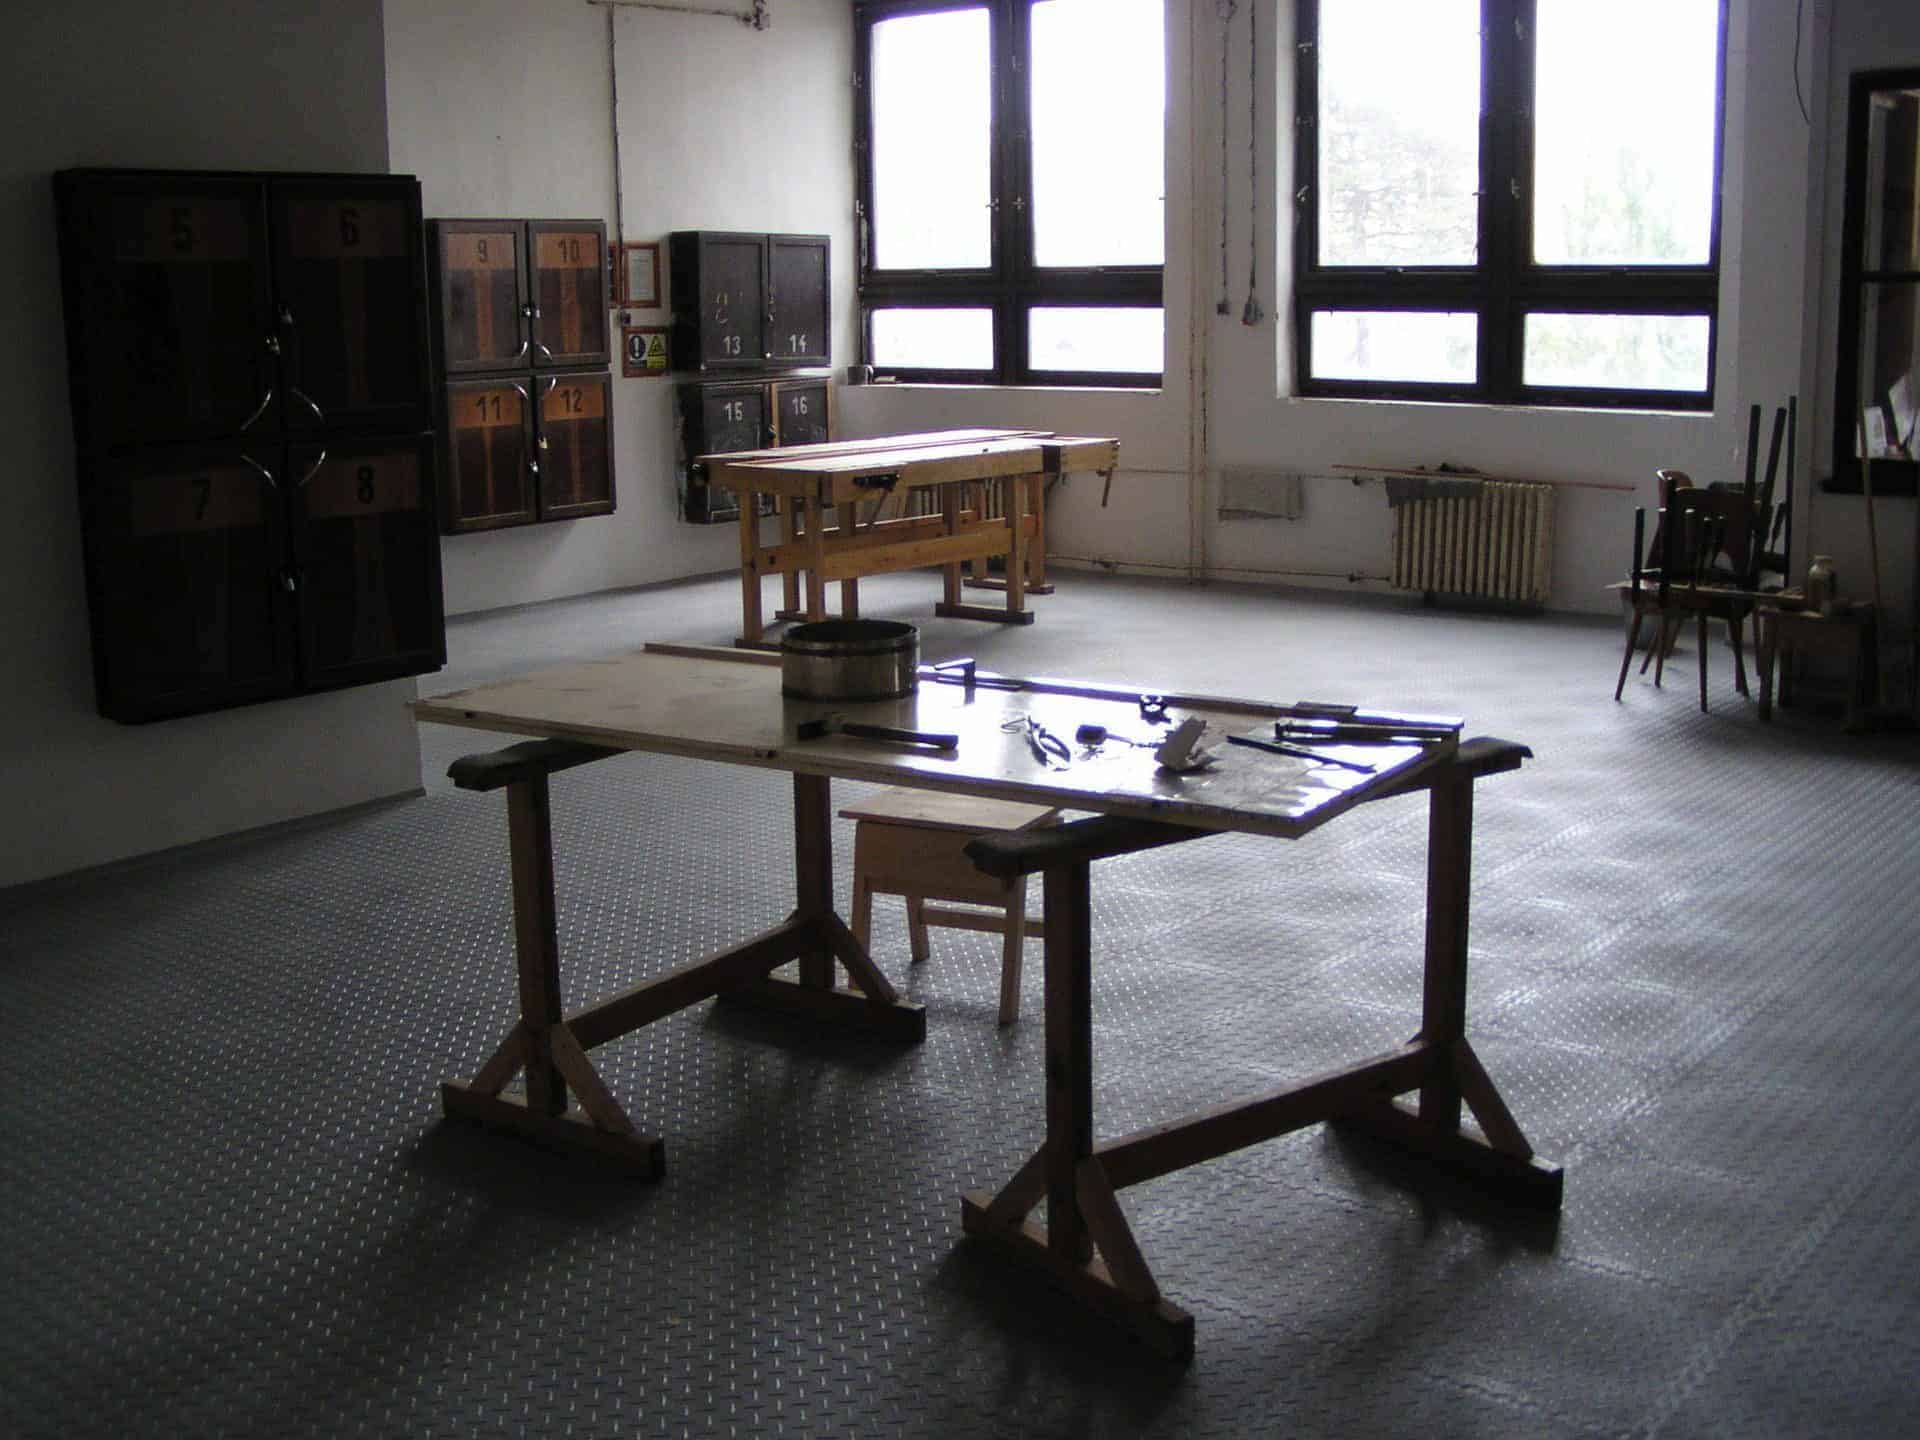 Školní prostory v Liberci, Česko